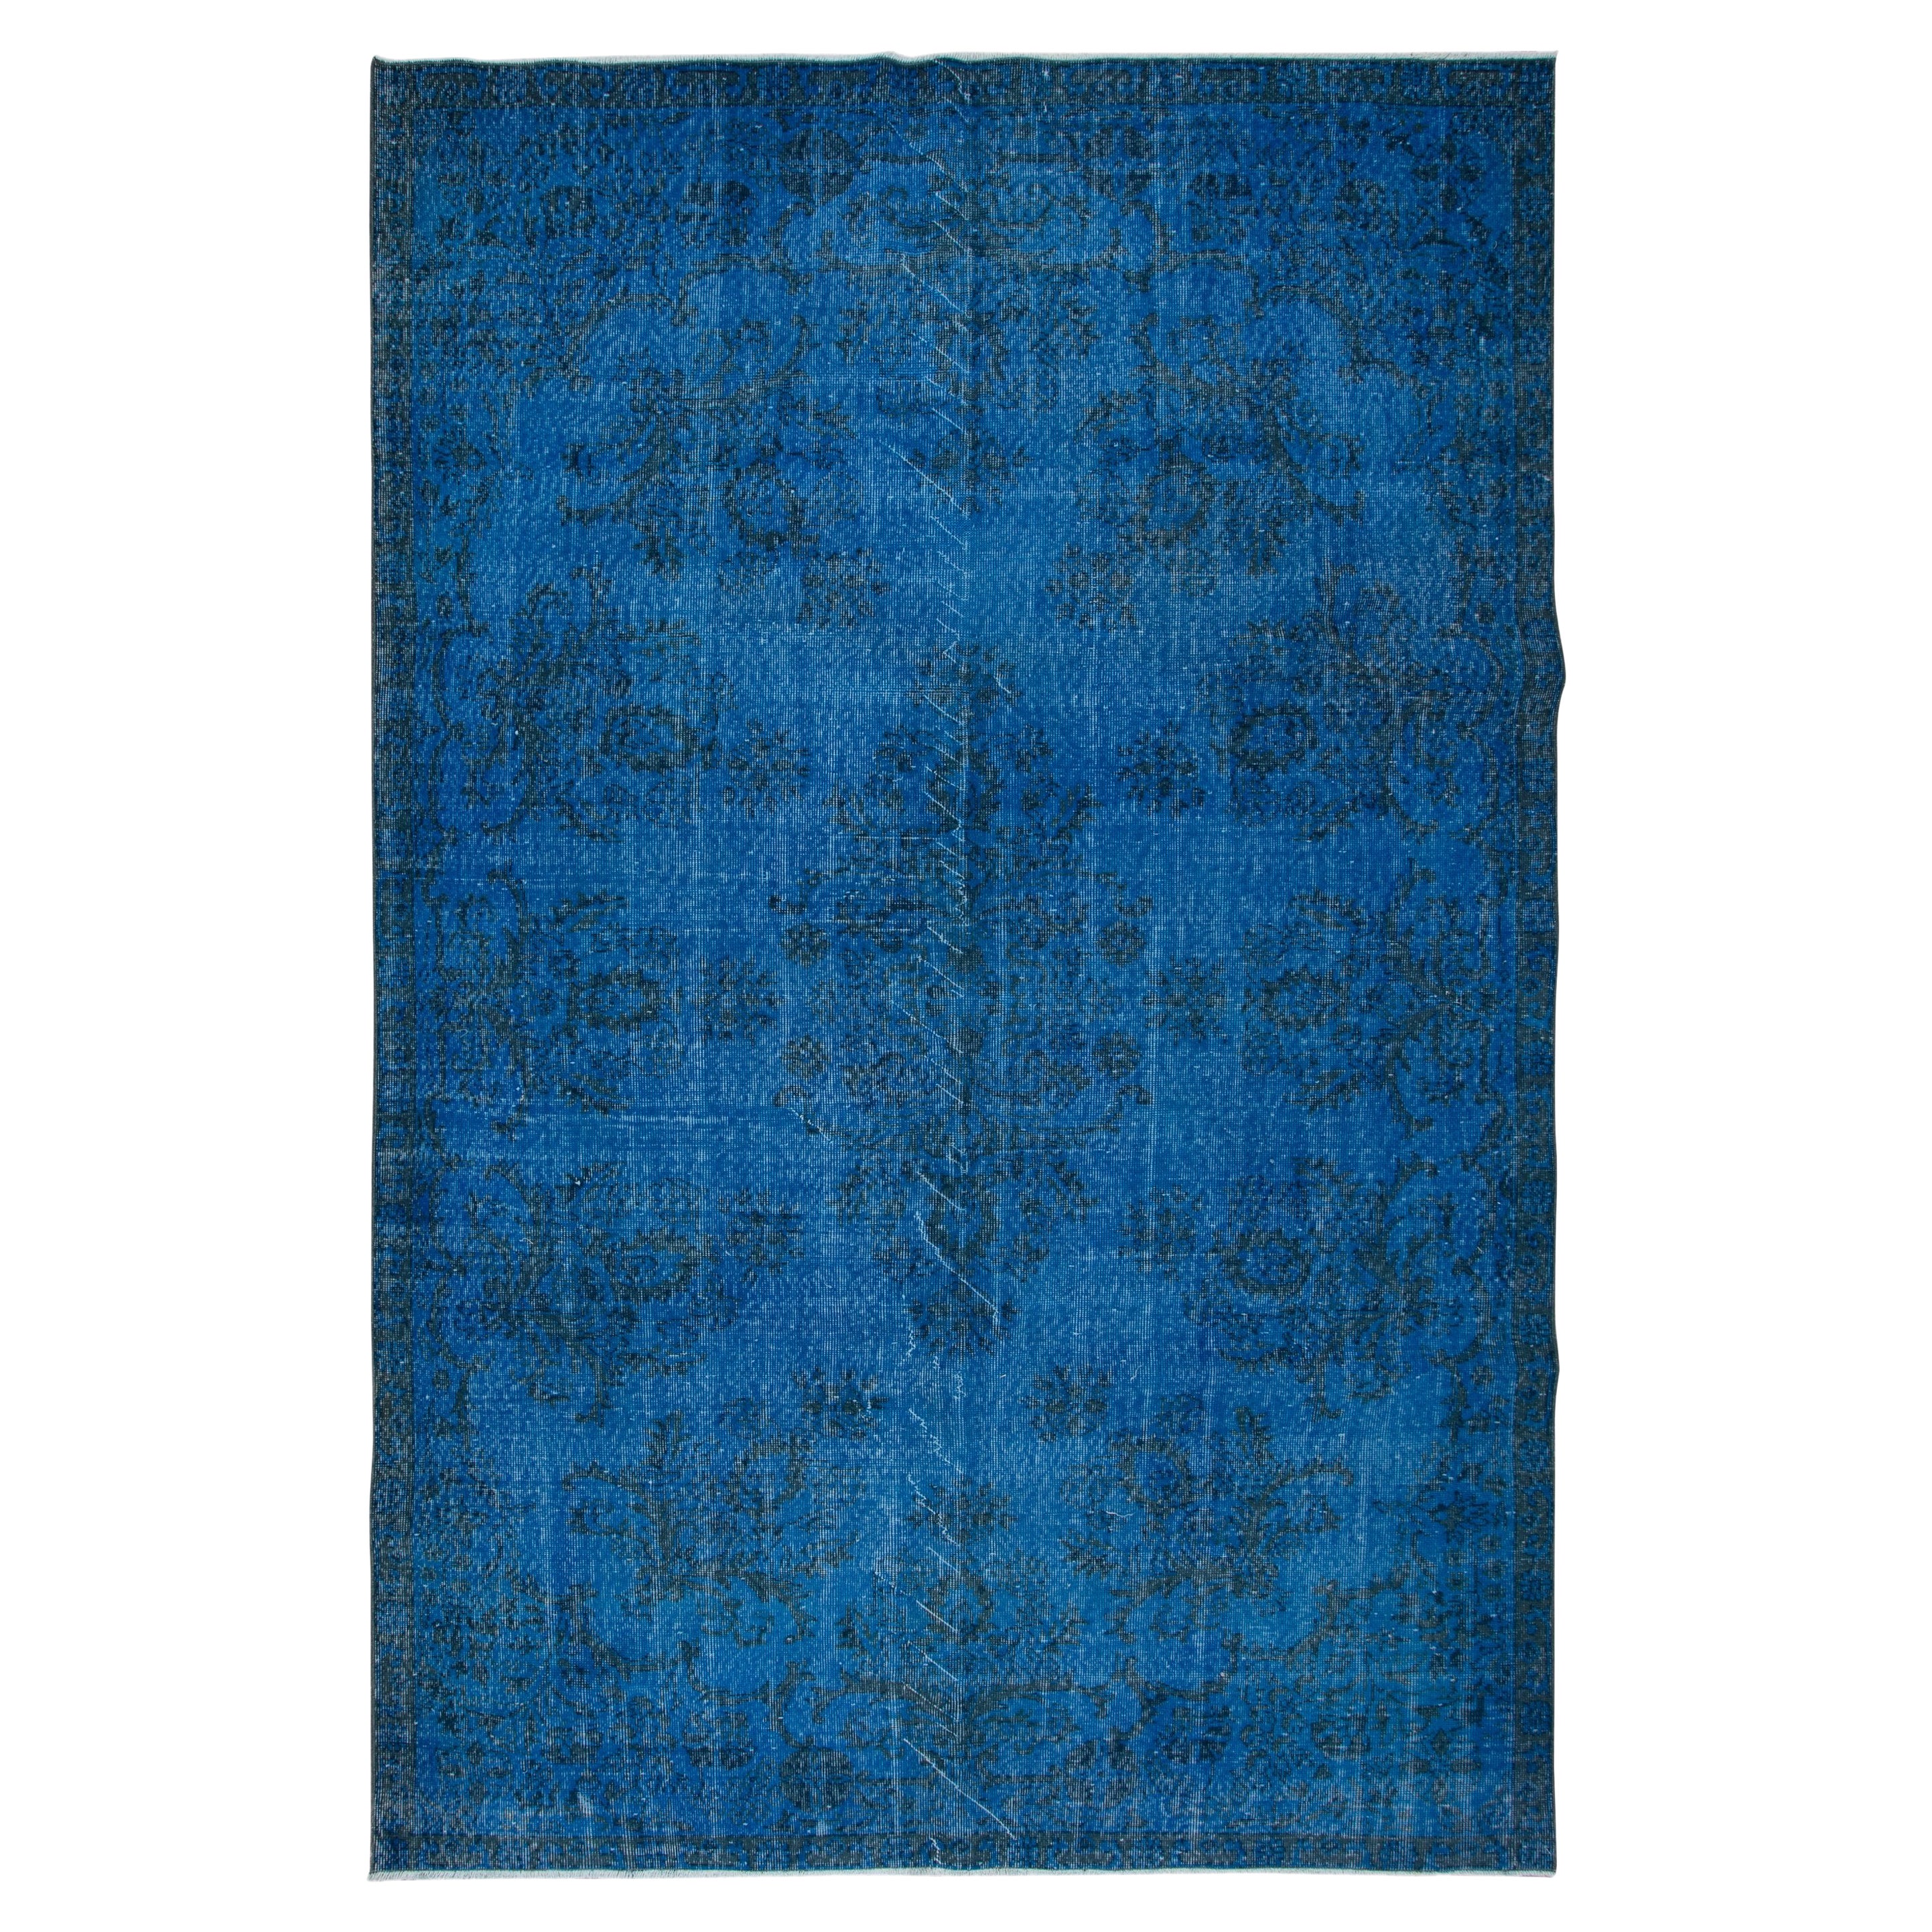 6.7x10.5 Ft Blue Modern Area Rug, Overdyed Carpet, Handmade Living Room Carpet